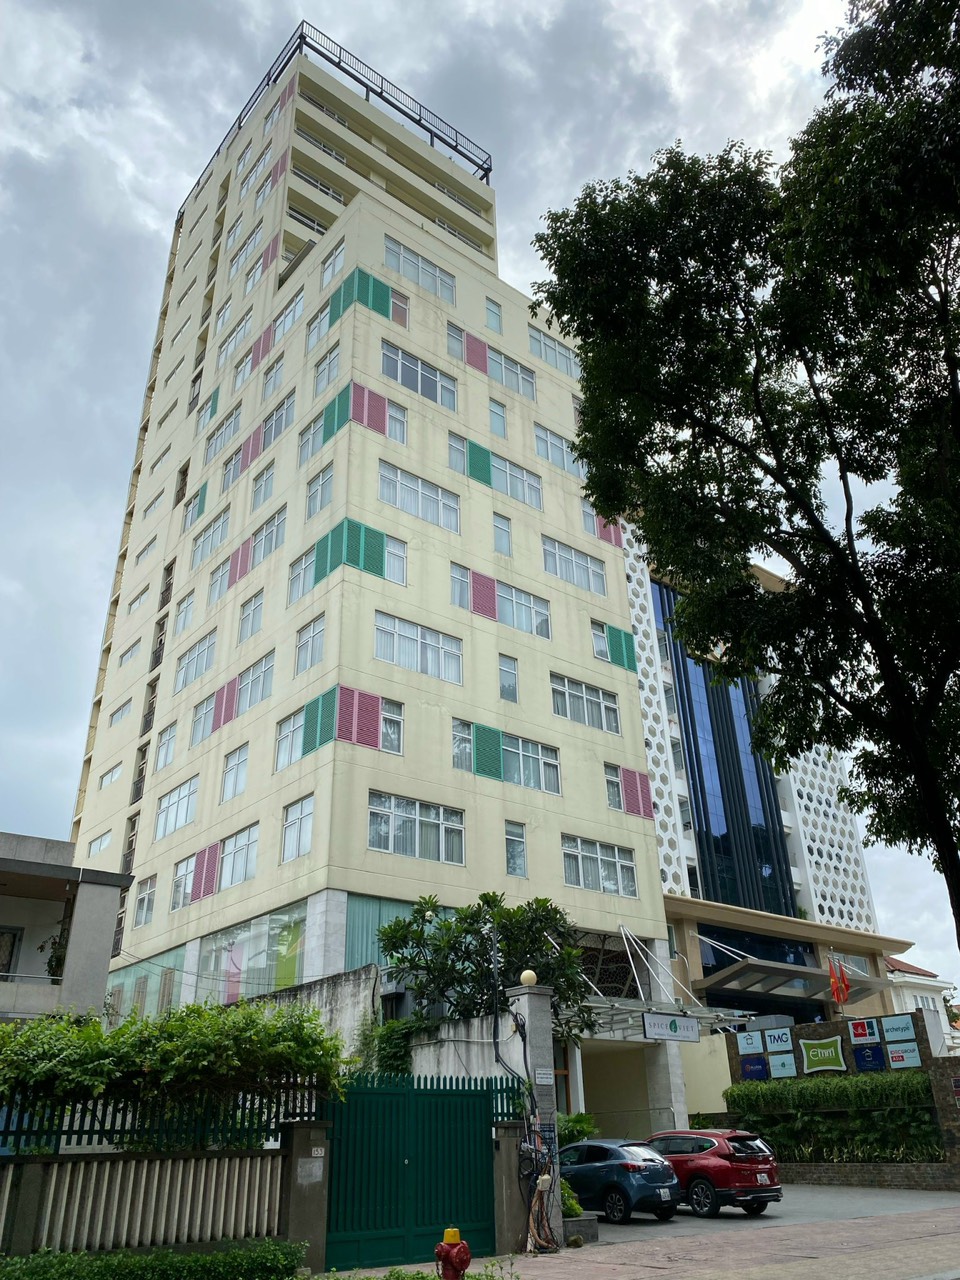 Bán - chuyển nhượng cao ốc 2 hầm 14 tầng trên đường Nguyễn Thị Minh Khai, P5, Q3 giá 590 tỷ